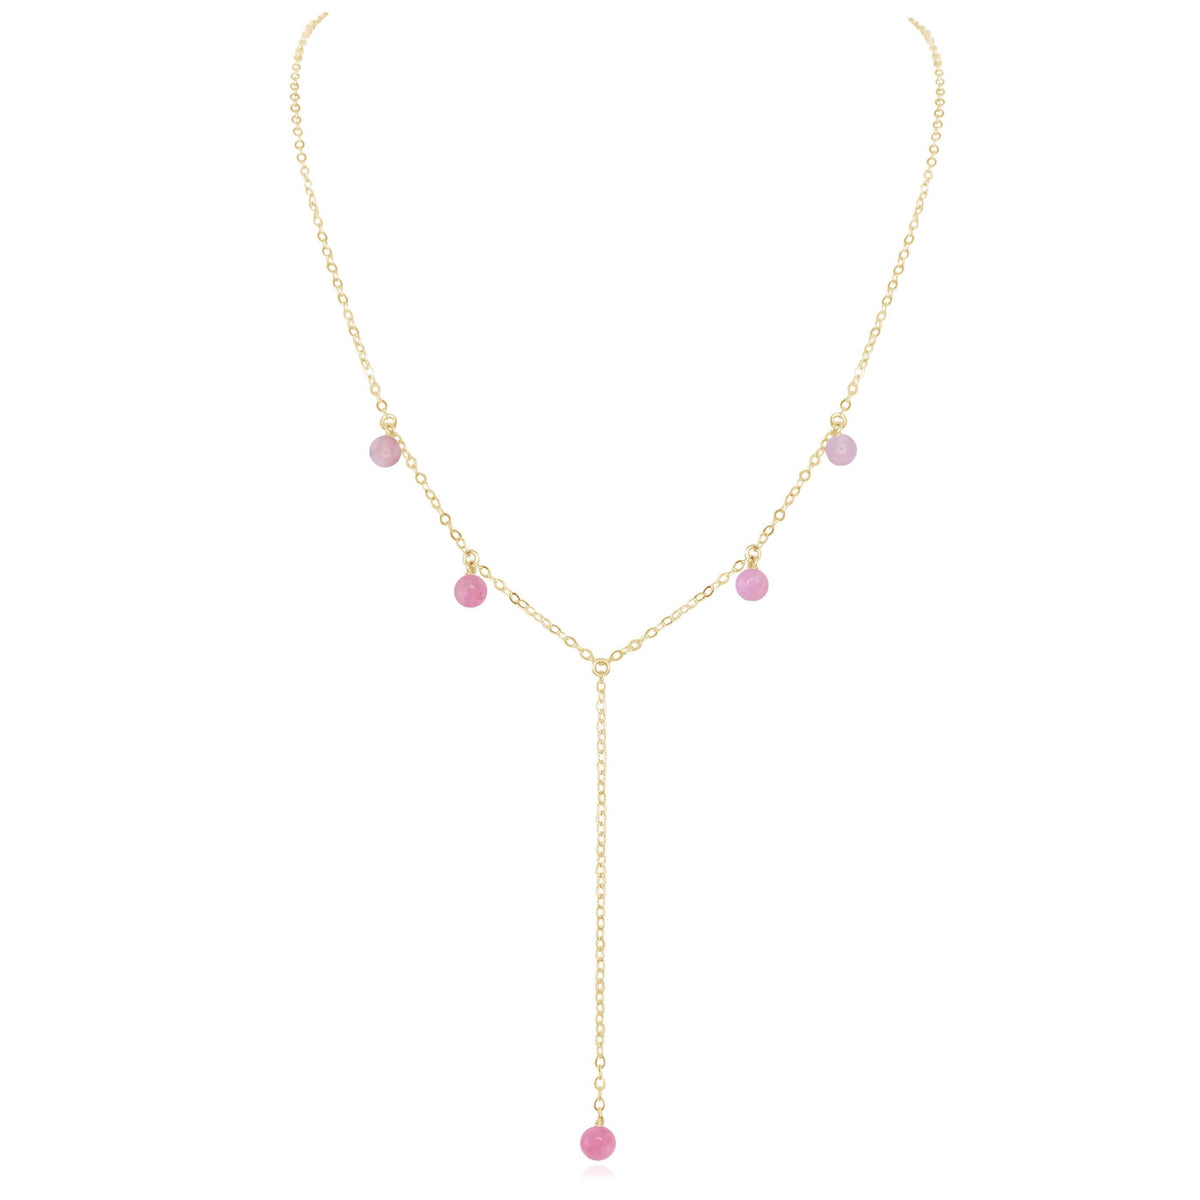 Boho Y Necklace - Pink Peruvian Opal - 14K Gold Fill - Luna Tide Handmade Jewellery